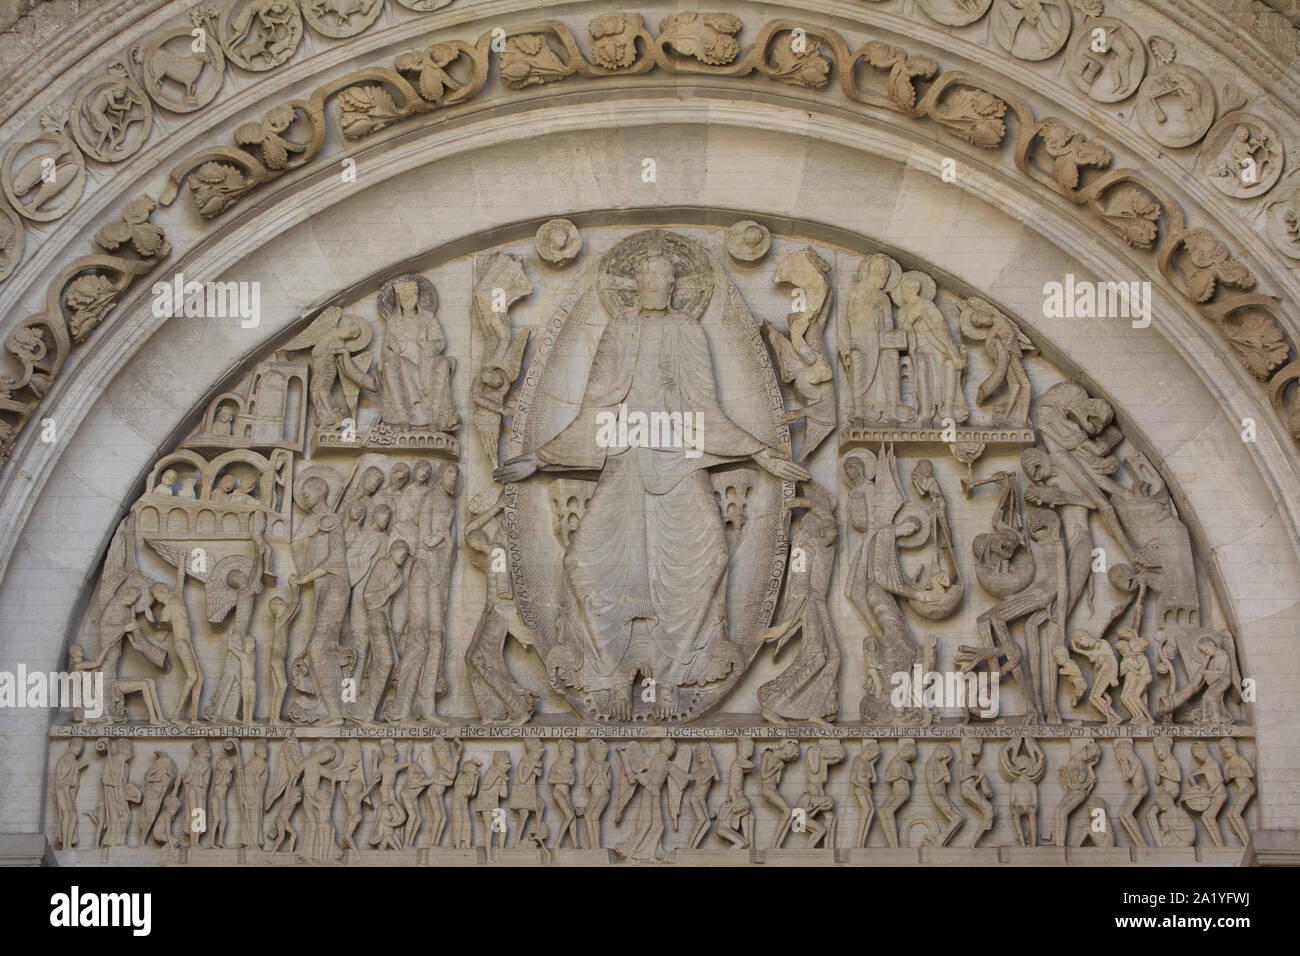 La última sentencia representado en el tímpano románico en el oeste portal de la Catedral de Autun (Cathédrale Saint-Lazare d'Autun) en Autun, Borgoña, Francia. El tímpano fue tallada por el escultor románico francés Gislebertus activas en la región en el siglo 12. Su nombre es conocido después de la firma de autógrafos del artista visto debajo del pie derecho de Jesús Cristo en el tímpano. Foto de stock